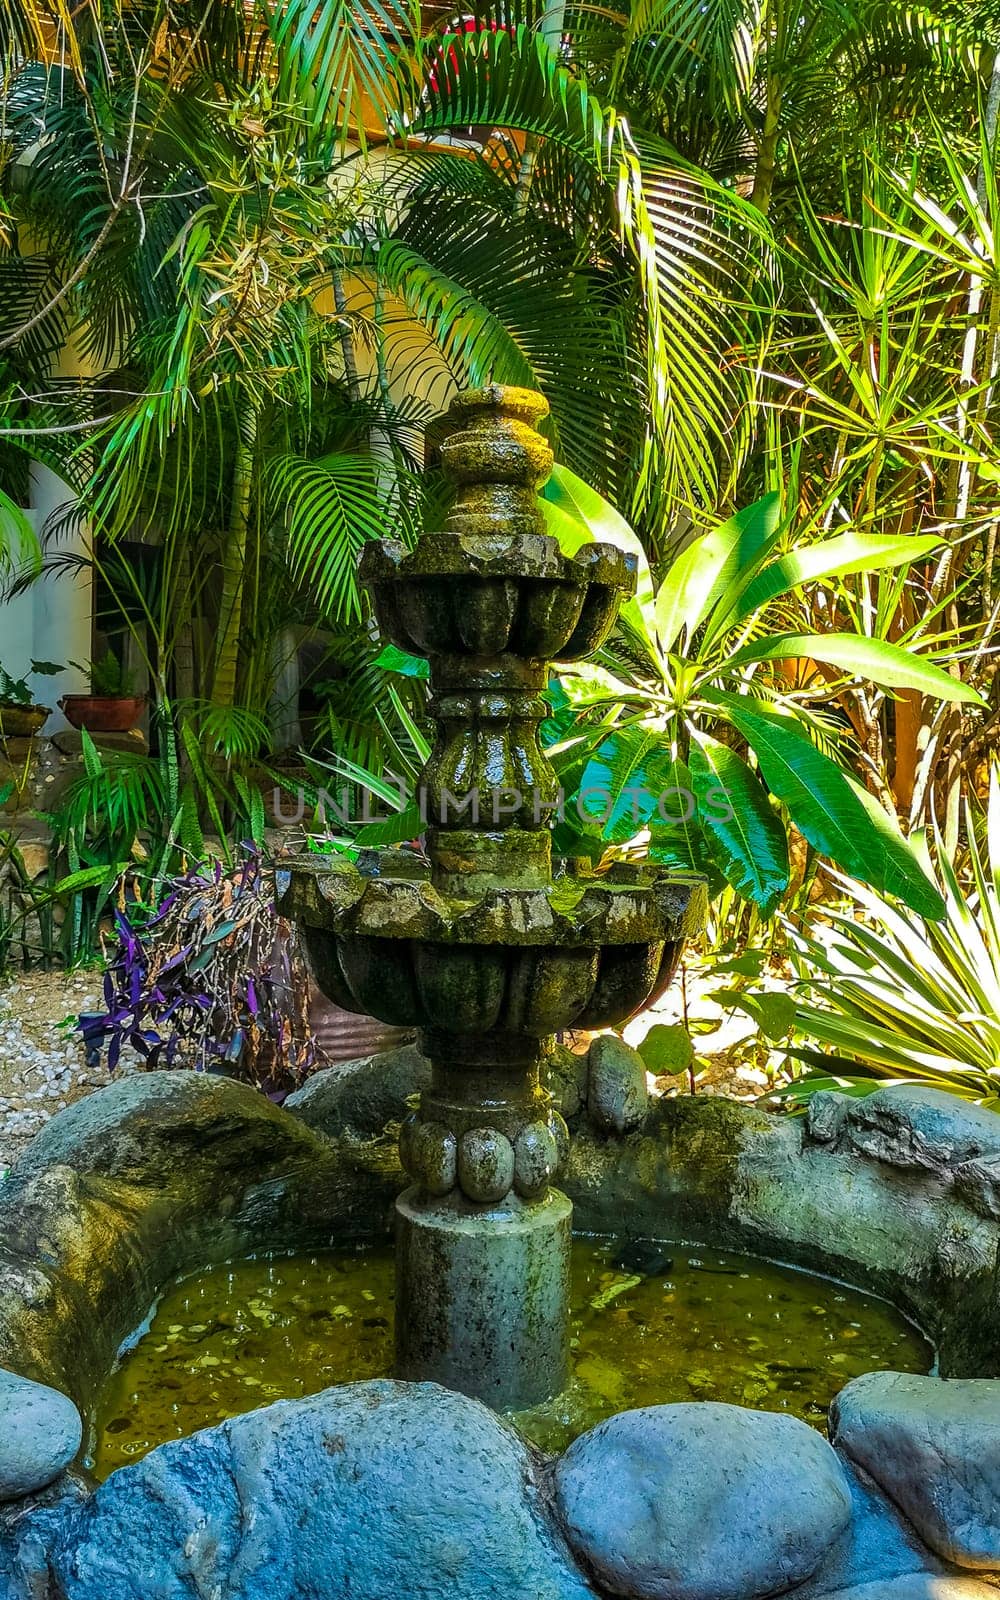 Nostalgic green fountain in the garden Puerto Escondido Mexico. by Arkadij